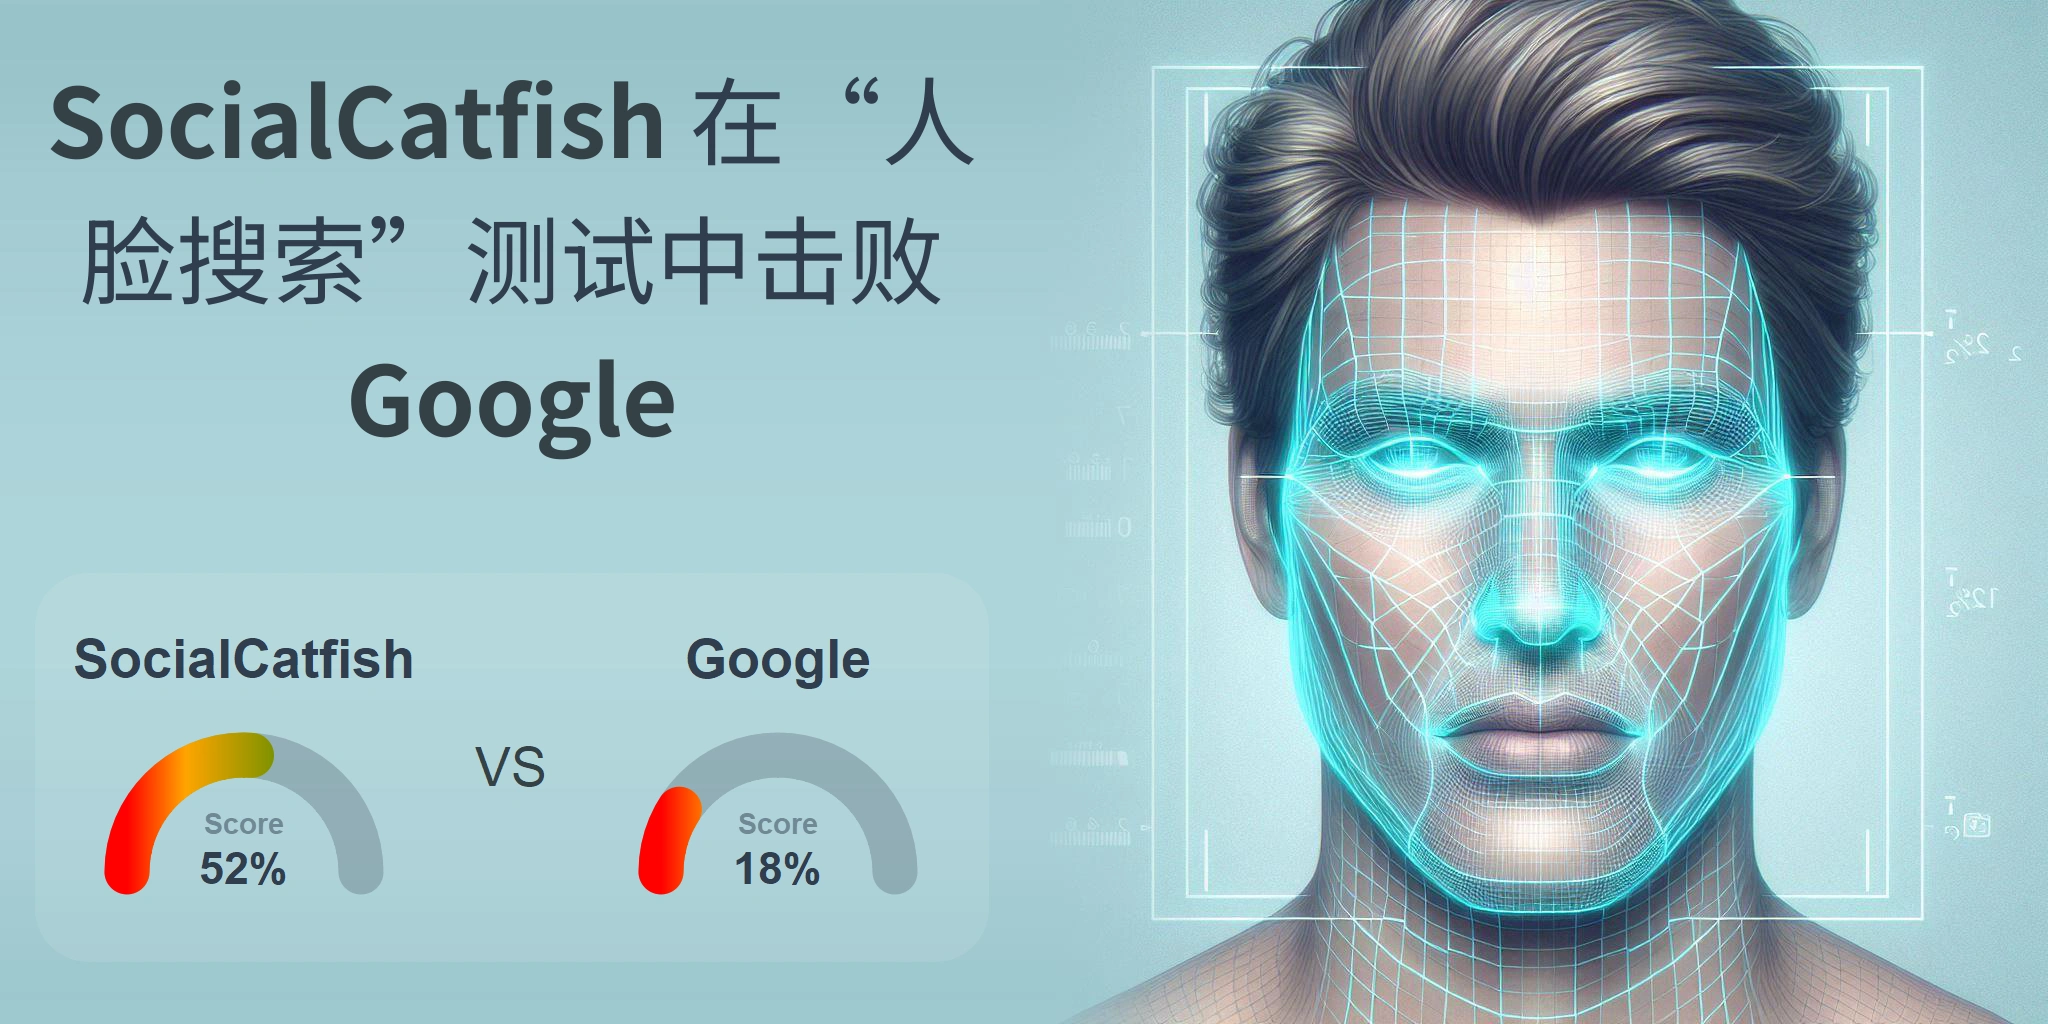 哪一个更适合人脸搜索：<br>Google 还是 SocialCatfish？